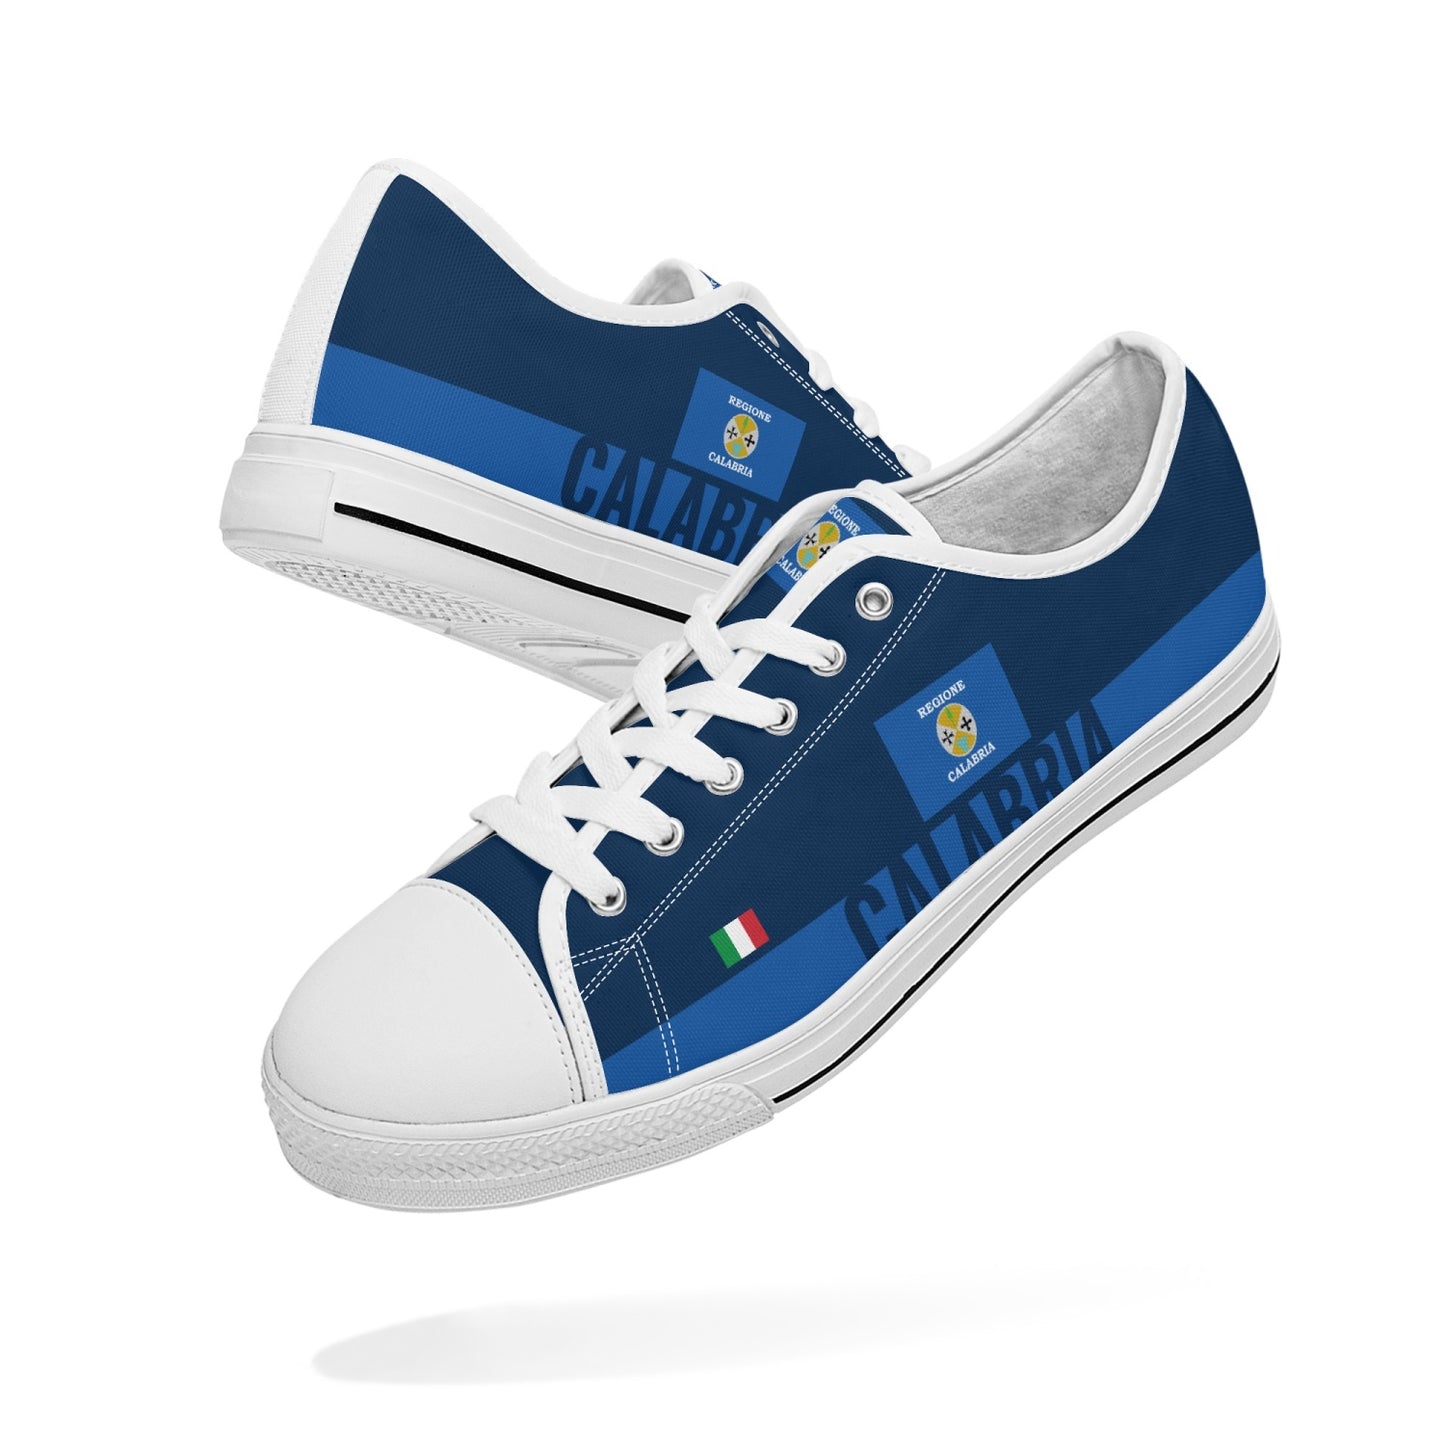 Calabria Shoes Low-top V2